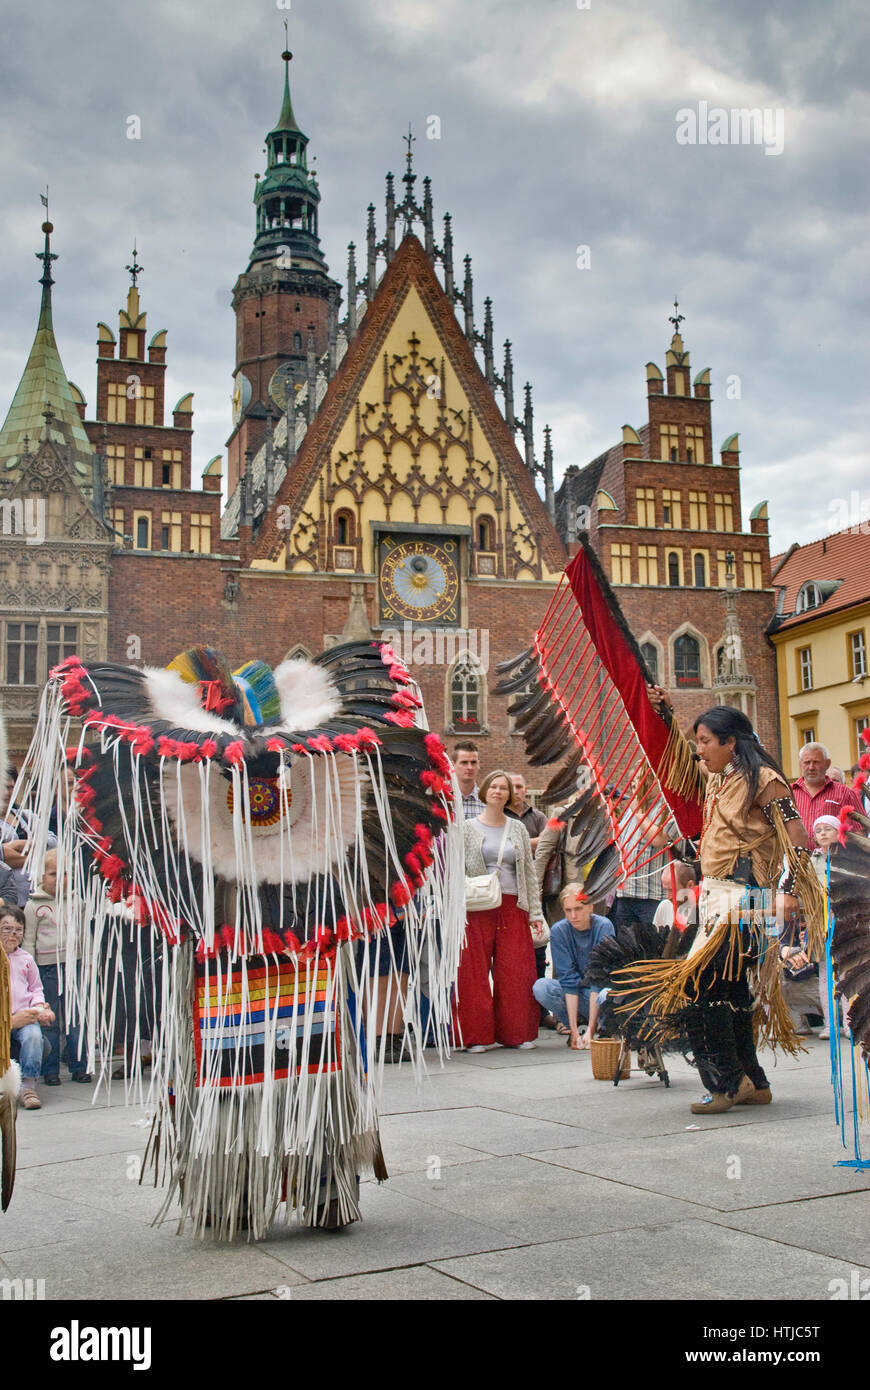 Sud indiani americani in esecuzione al Rynek nella parte anteriore del Municipio medievale a Wroclaw, Bassa Slesia, Polonia Foto Stock